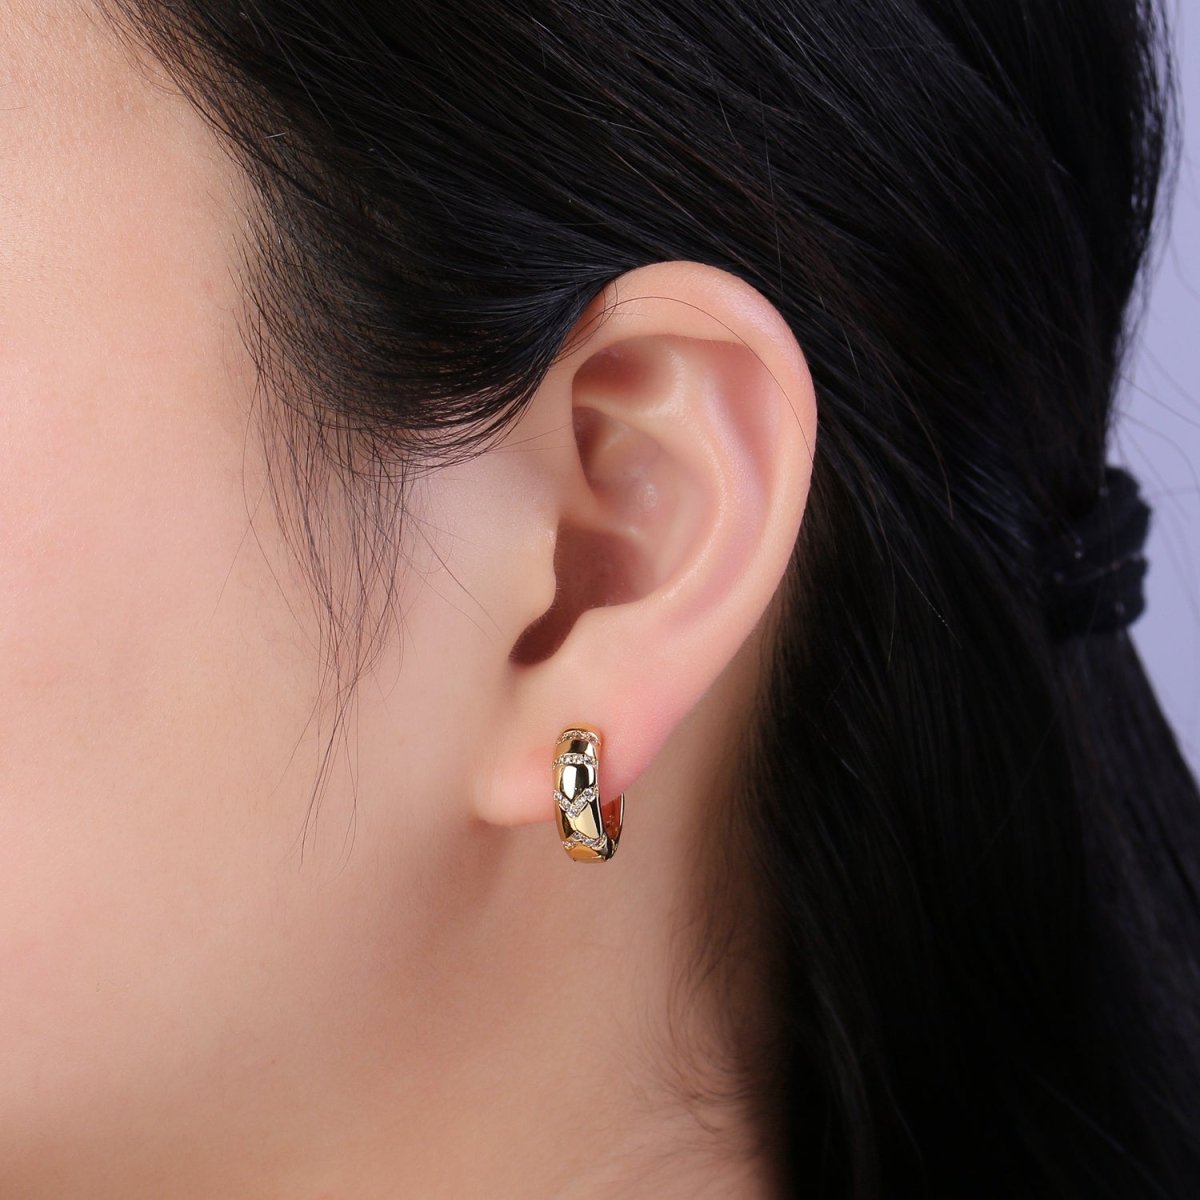 Hinged Gold Huggie Hoop Earrings 16mm Small Huggie Hoops, Dome Hoops, Gold Earrings for Women T-361 - DLUXCA